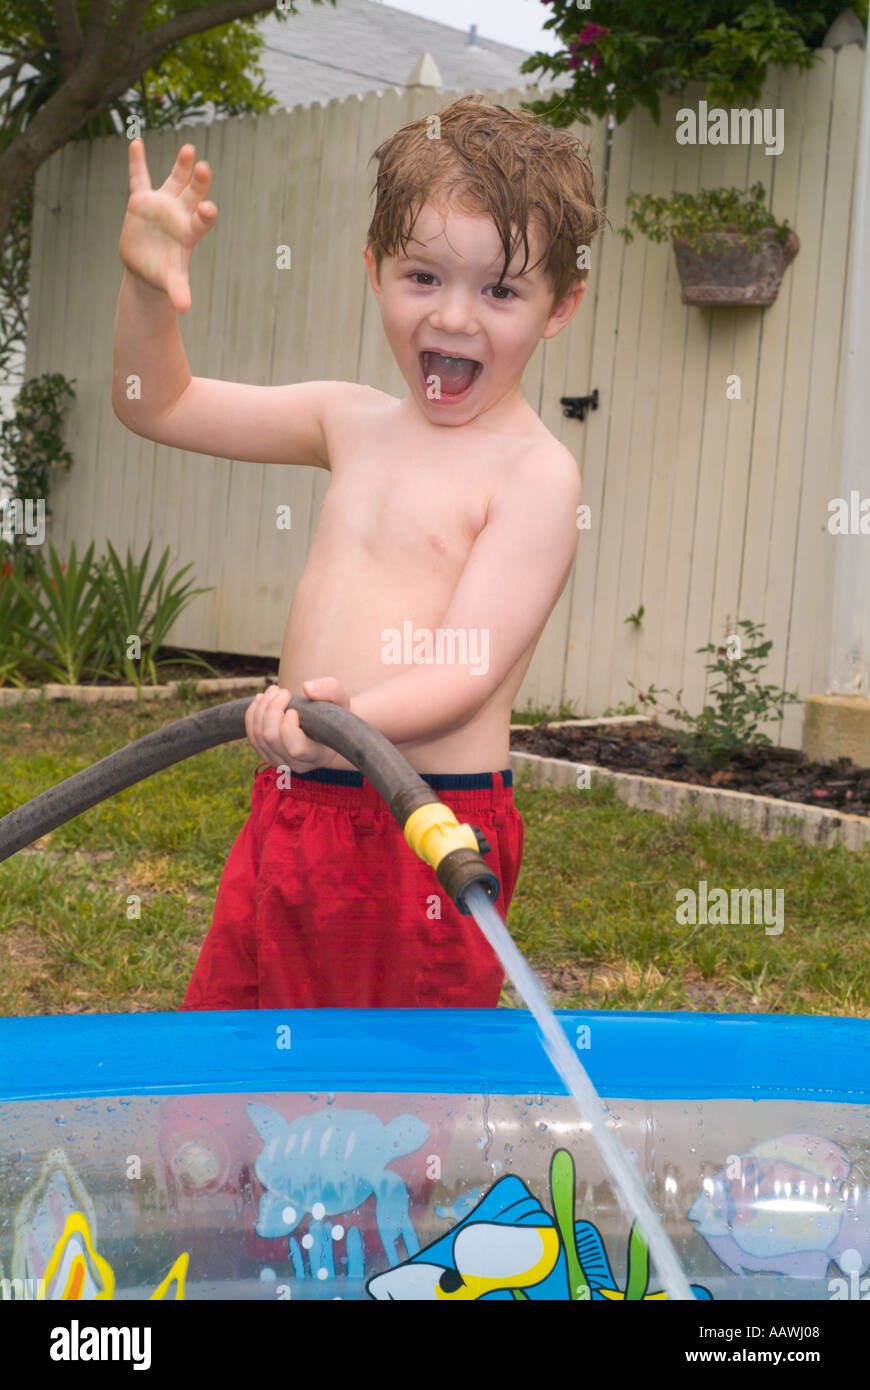 Einfüllen von Wasser Kind Kinder jungen Sommer Spielspaß nass spritzen  Schlauch Hinterhof aufgeregt Pool Boy Stockfotografie - Alamy